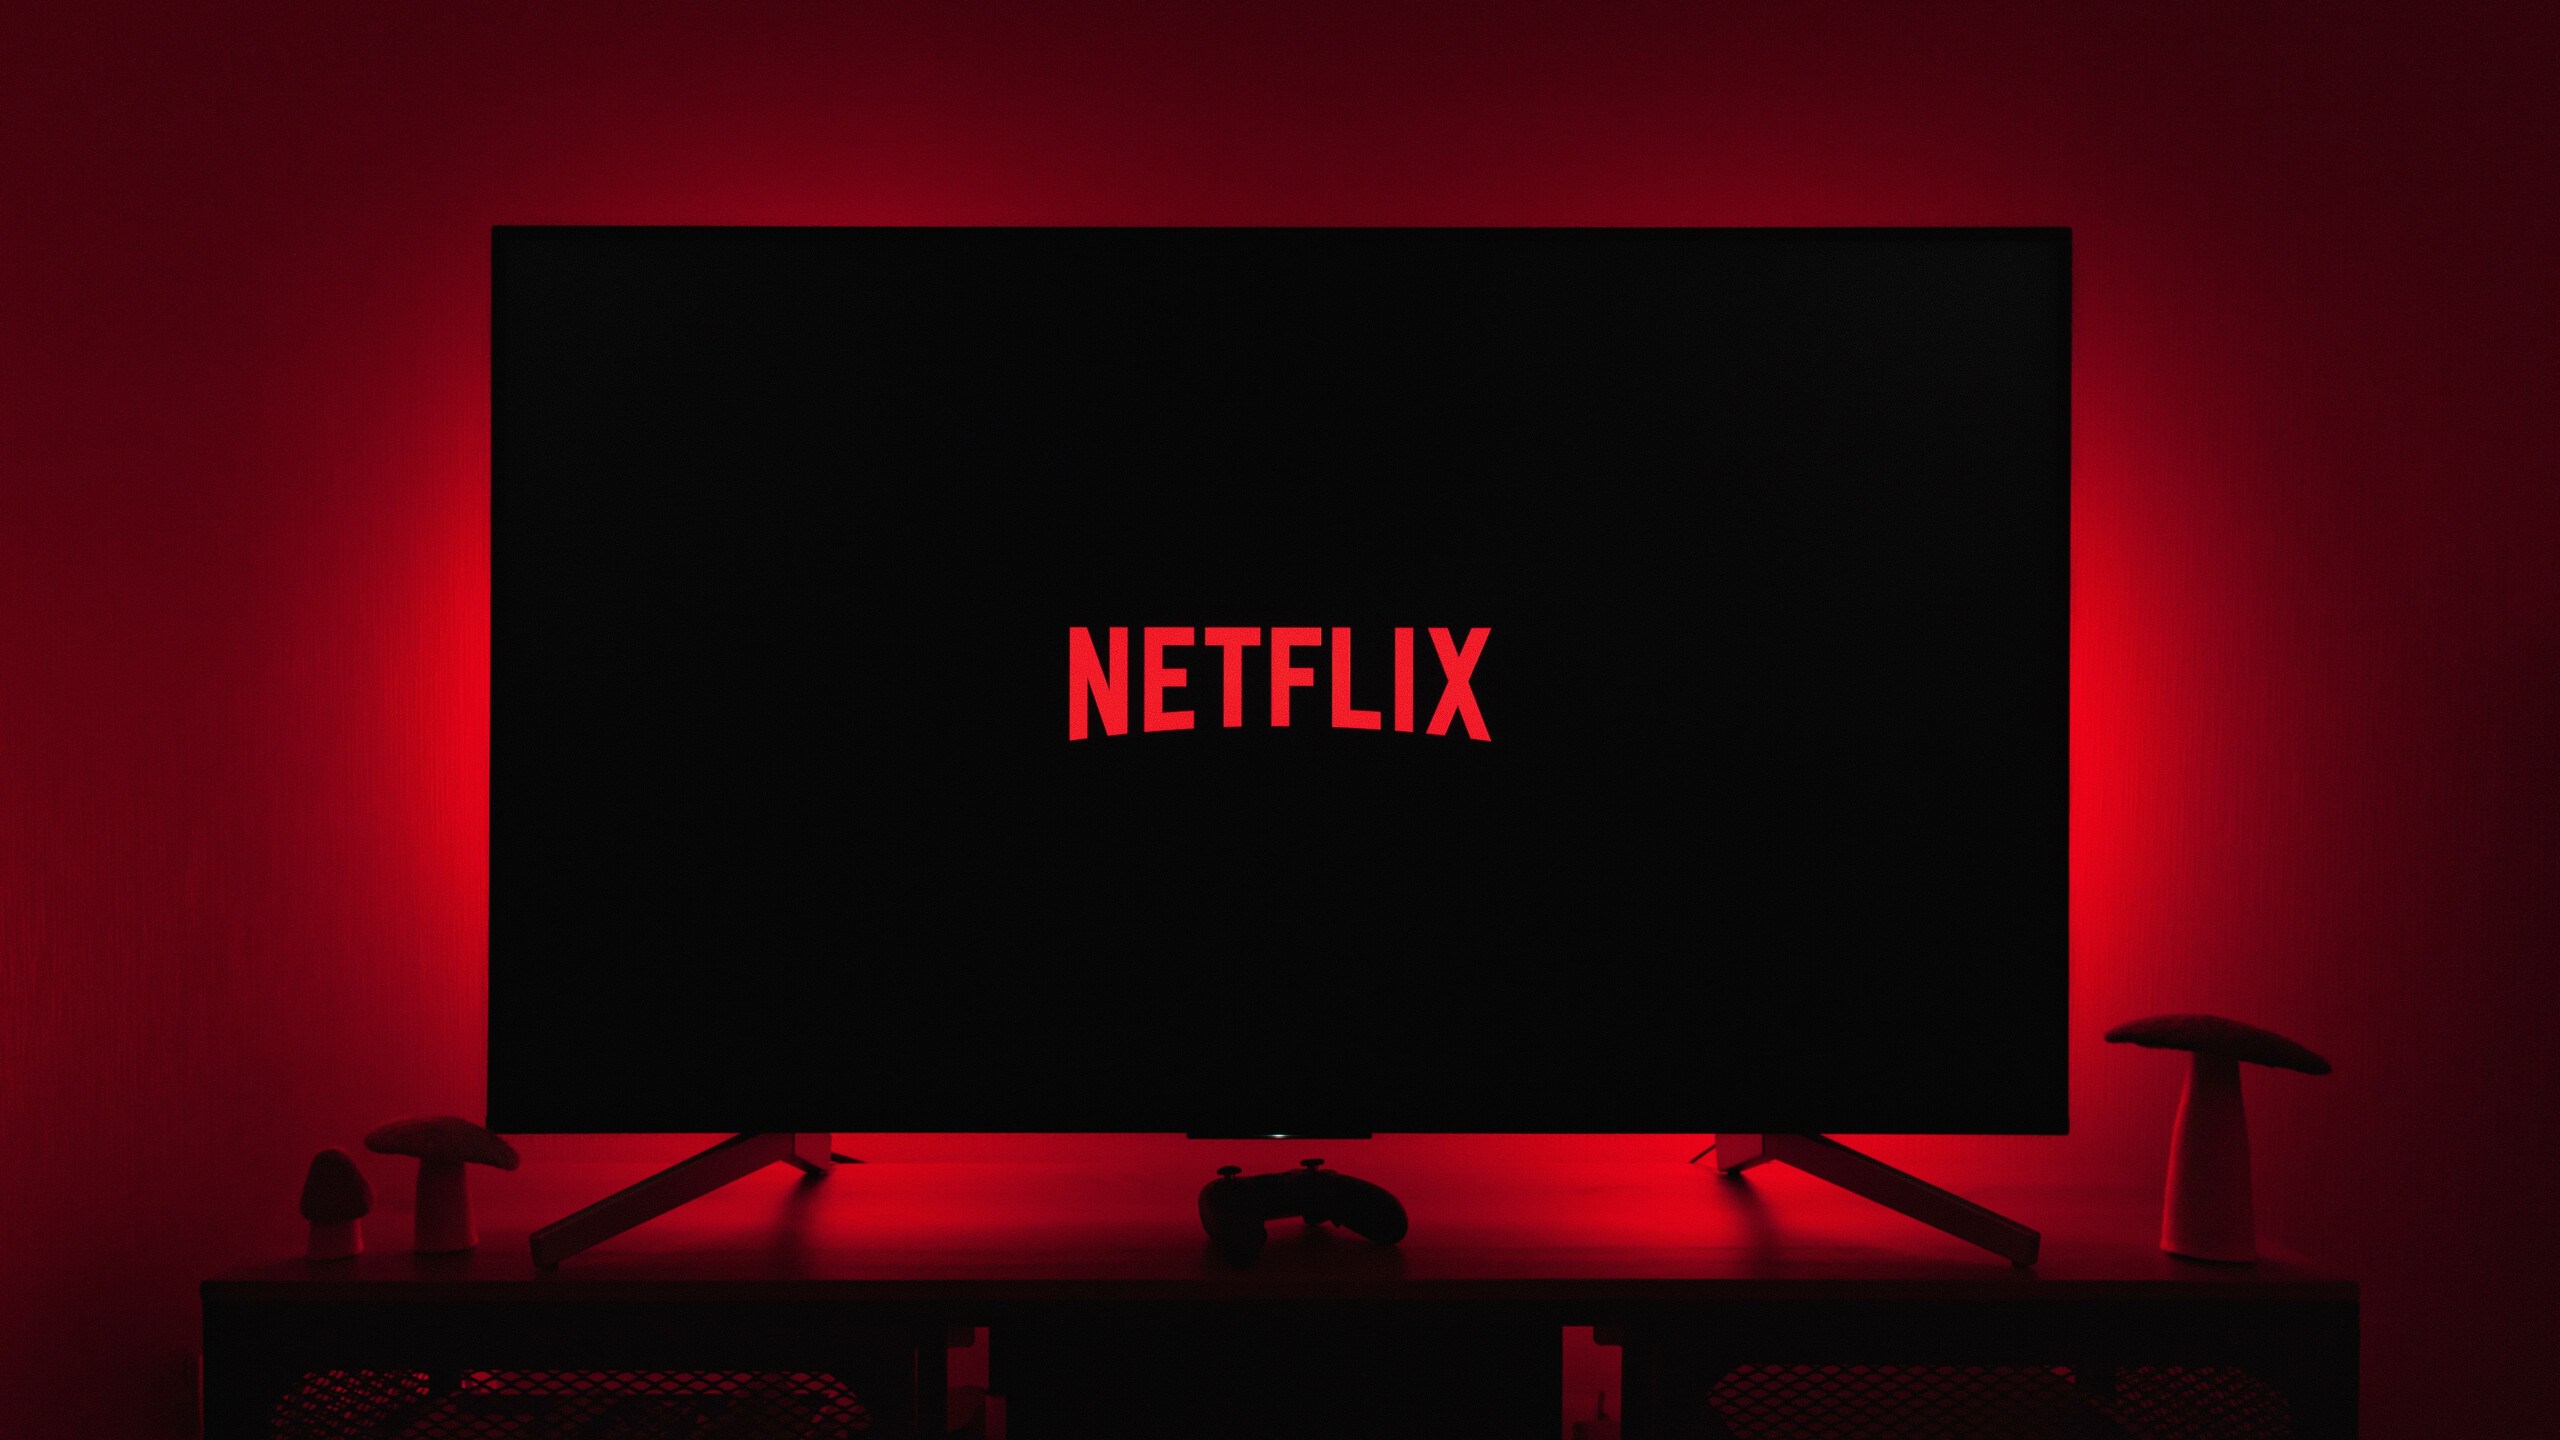 Passou a tempestade? Netflix ganha novos assinantes e ações sobem mais que o esperado